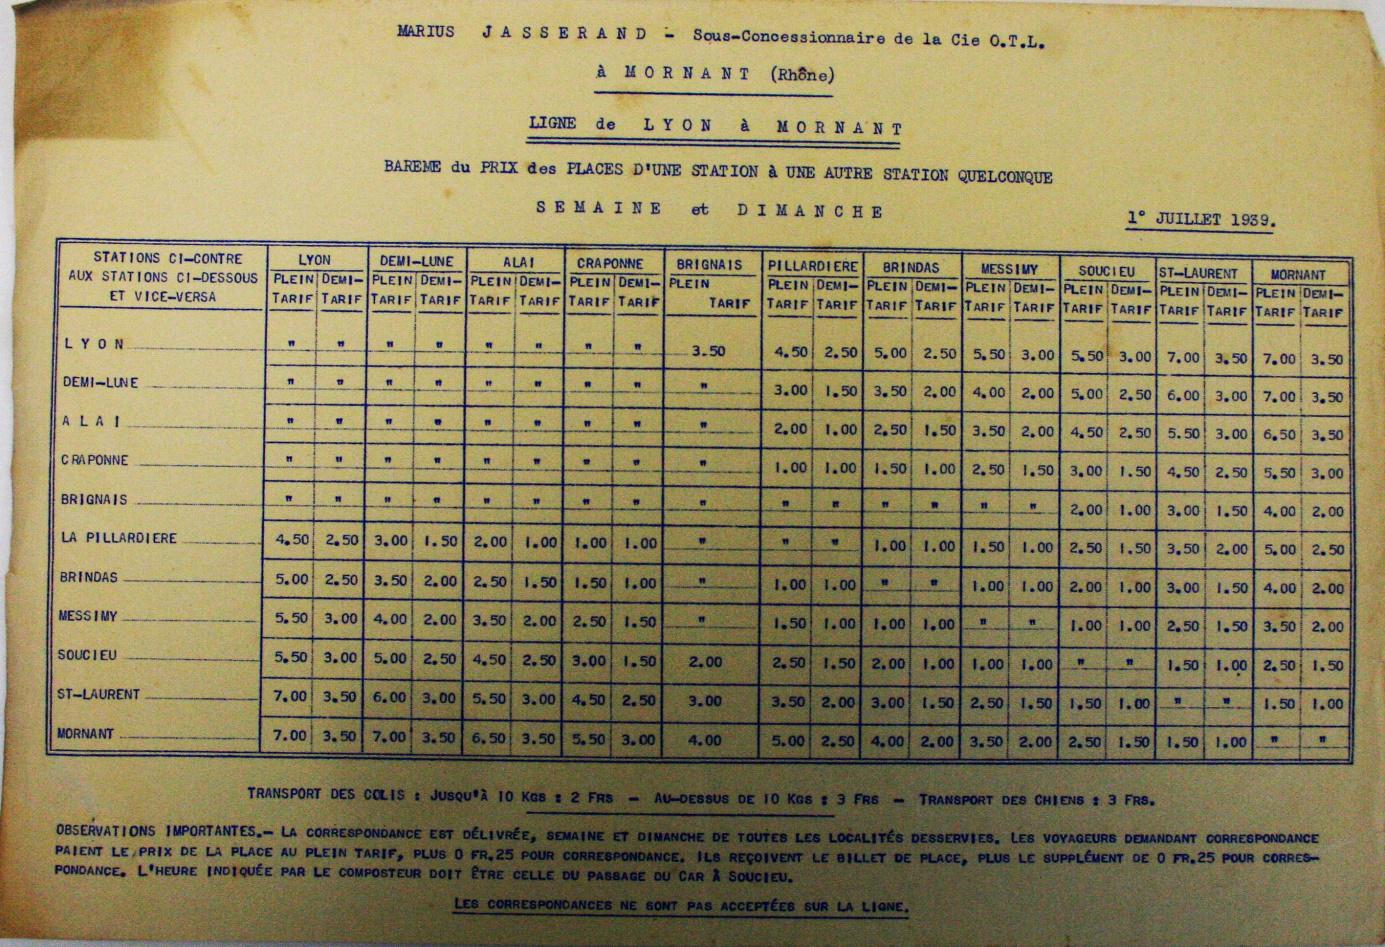 1939 fare table Mornant